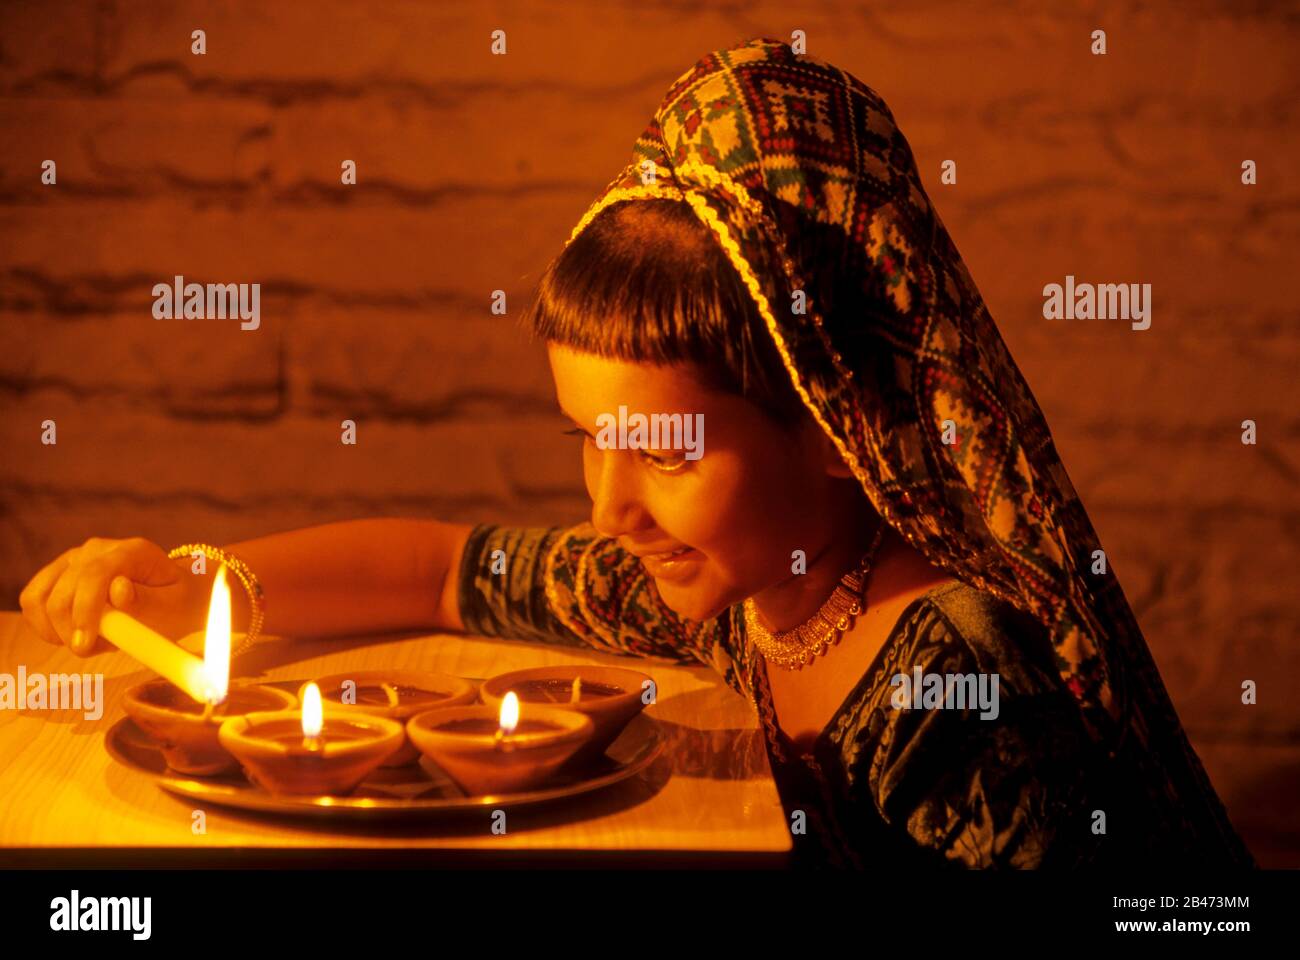 Girl lighting oil lamps on Diwali Festival, India, Asia, MR#201 Stock Photo